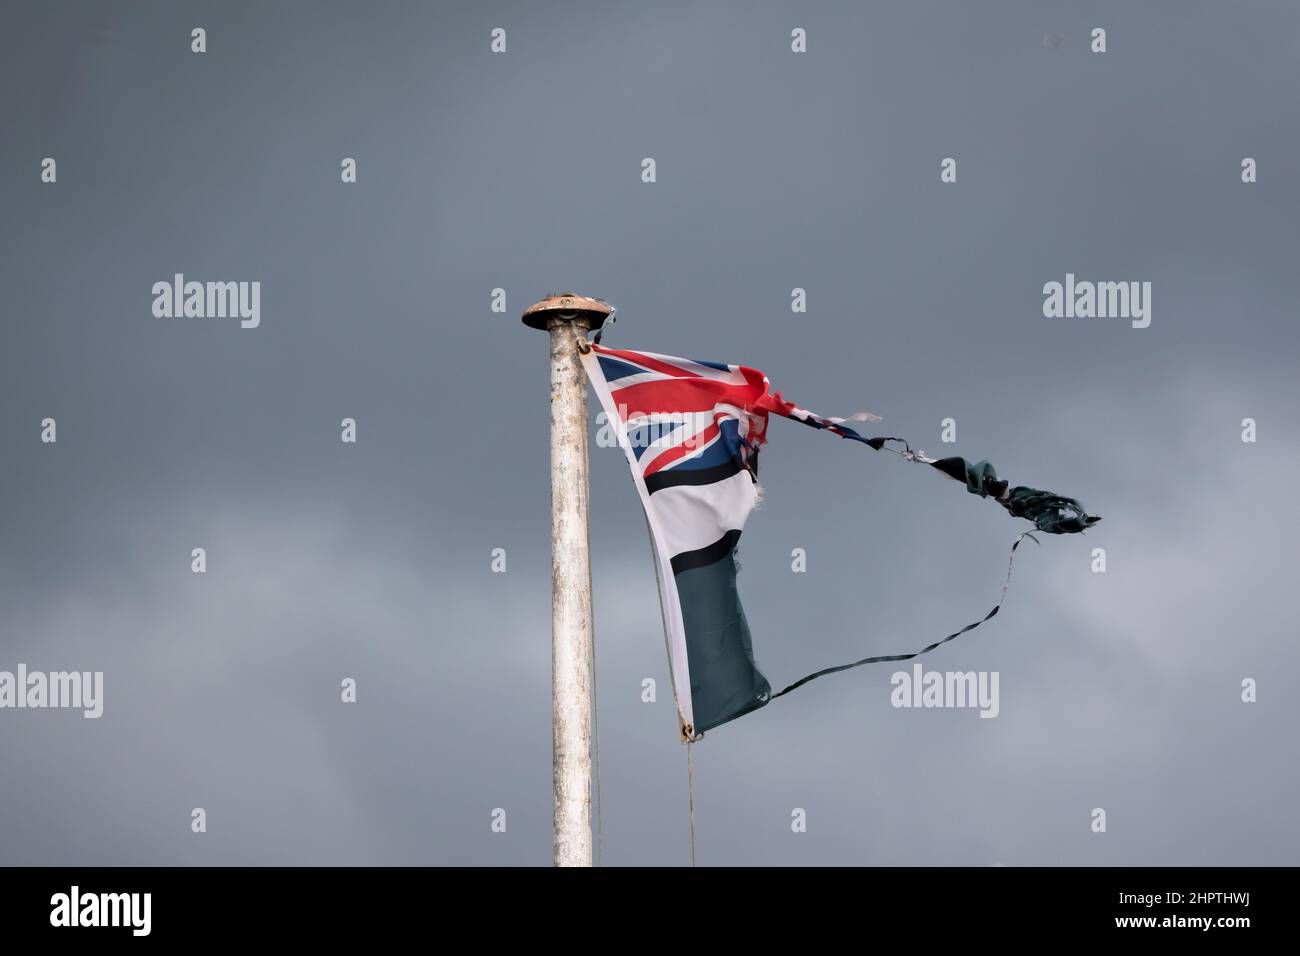 Eine zerrissene Union Jack-Flagge fliegt an einem launischen Tag von einem weißen Fahnenmast. Dunkle Wolken tragen zum düsteren Bild bei. Stockfoto